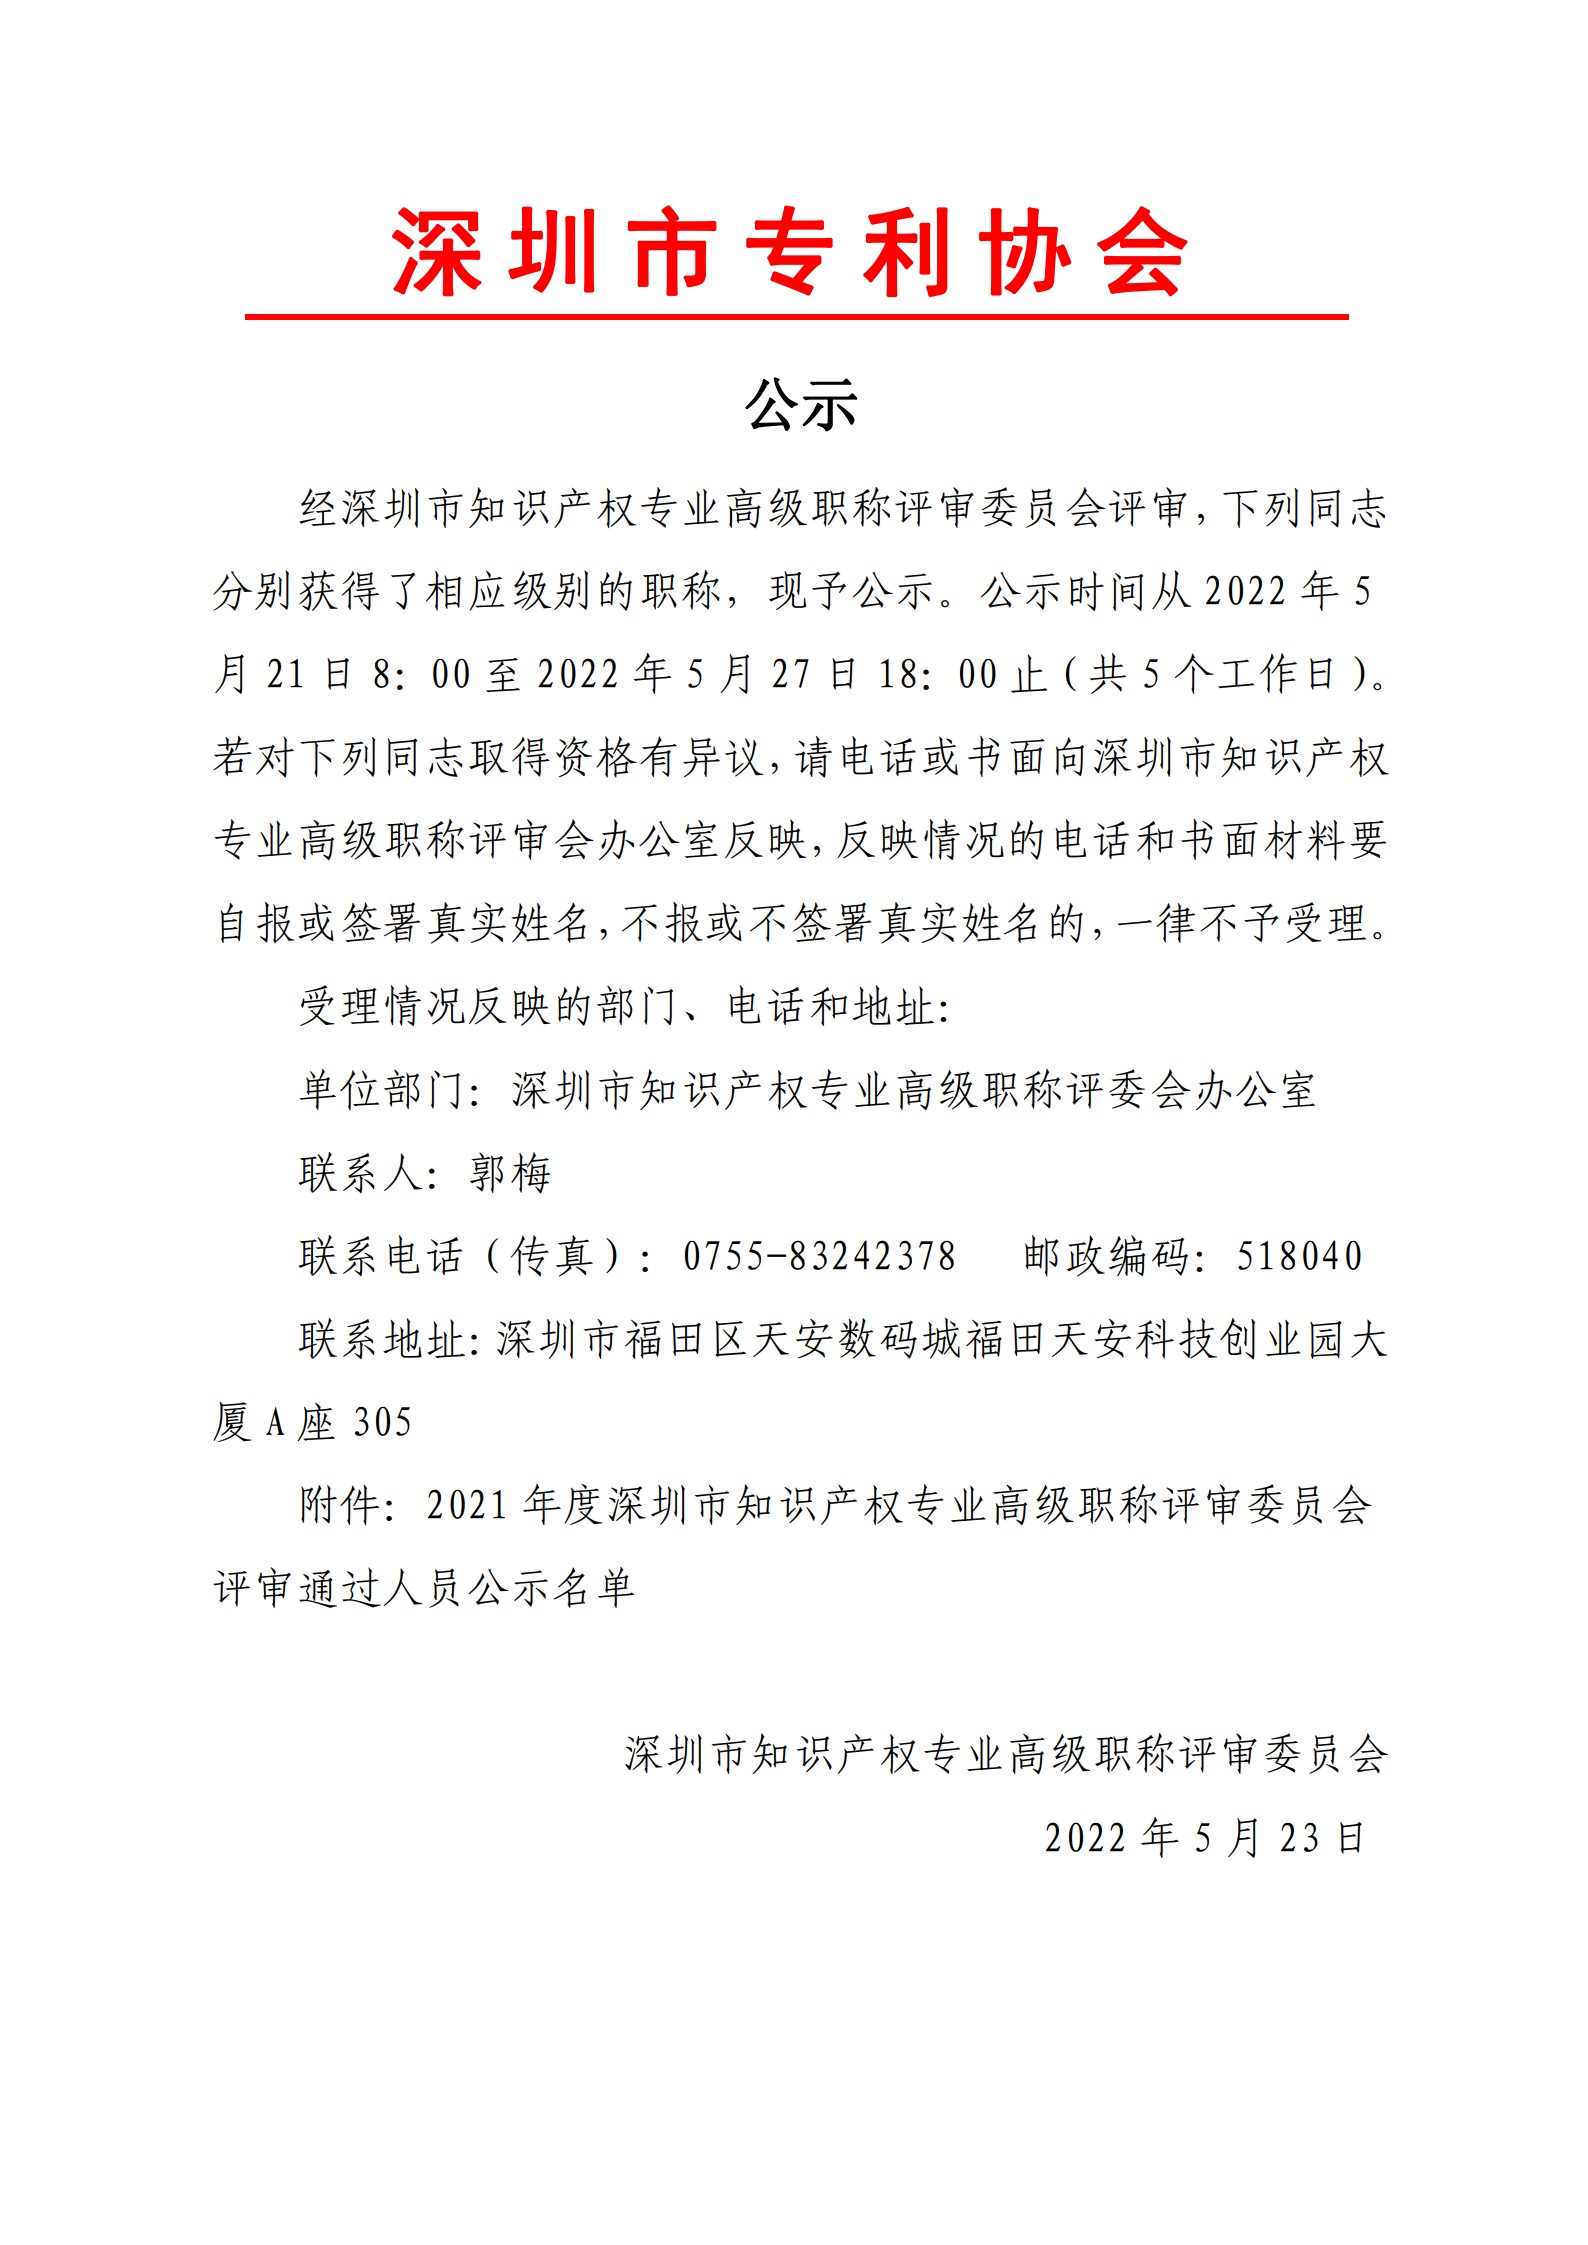 2021年度深圳市知识产权专业高级职称评审委员会评审通过人员公示_20220523131732_1.jpg